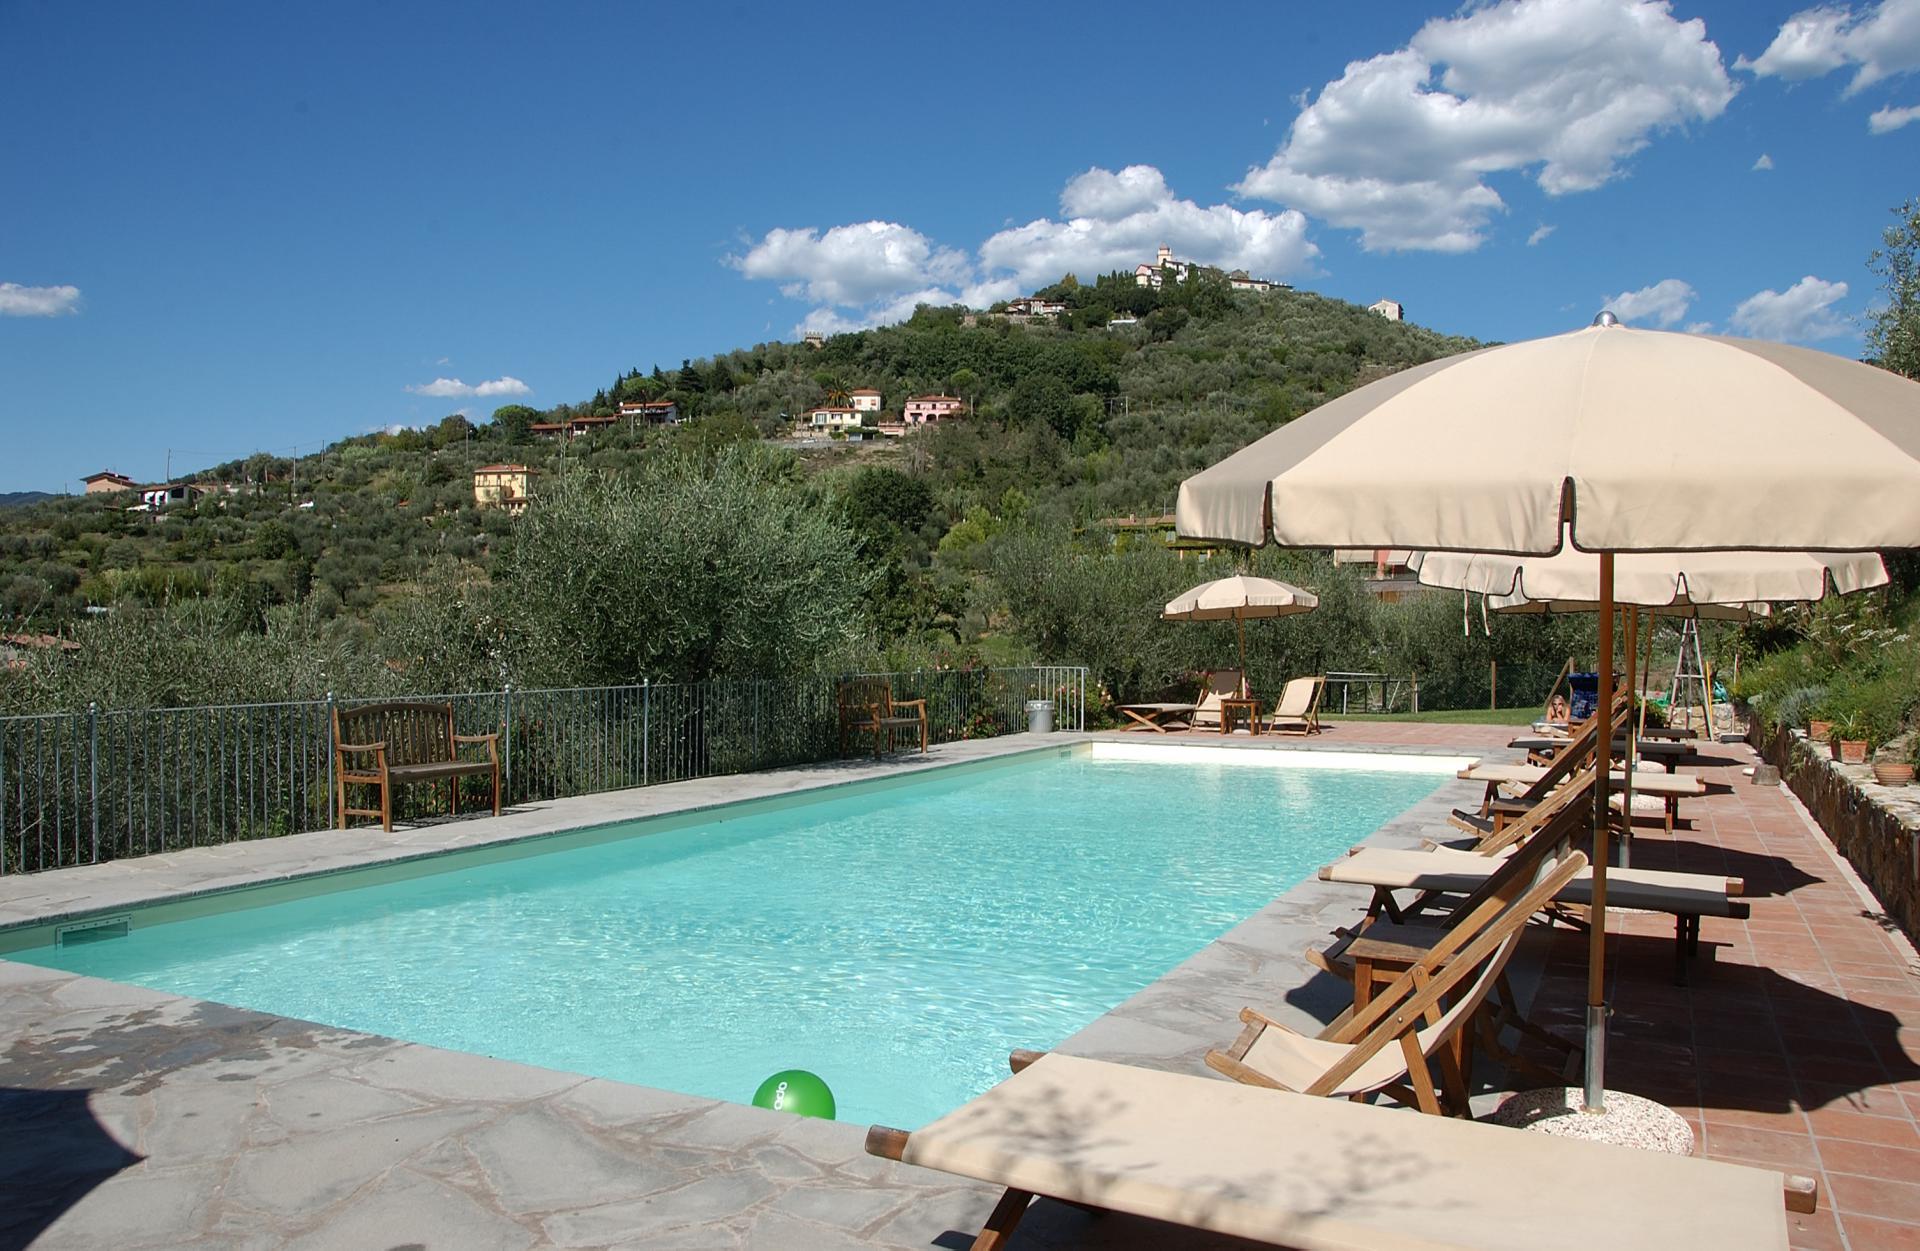 278_b614d97_Agriturismo Monteverde Liguria La Spezia vakantiehuis met zwembad (2)